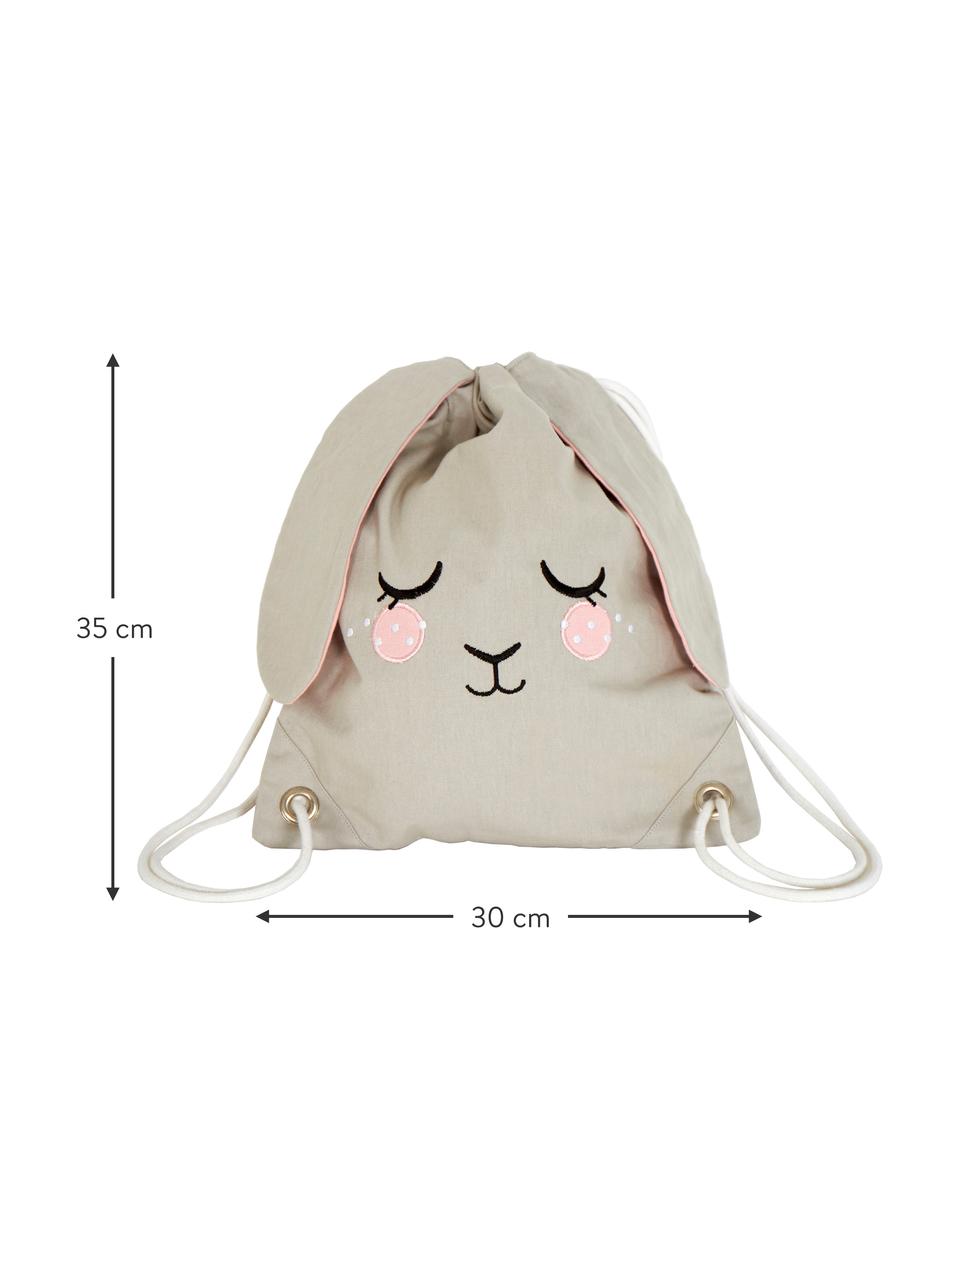 Zaino per bambini beige Bunny, 100% cotone organico certificato GOTS, Beige, rosa, Larg. 30 x Alt. 35 cm